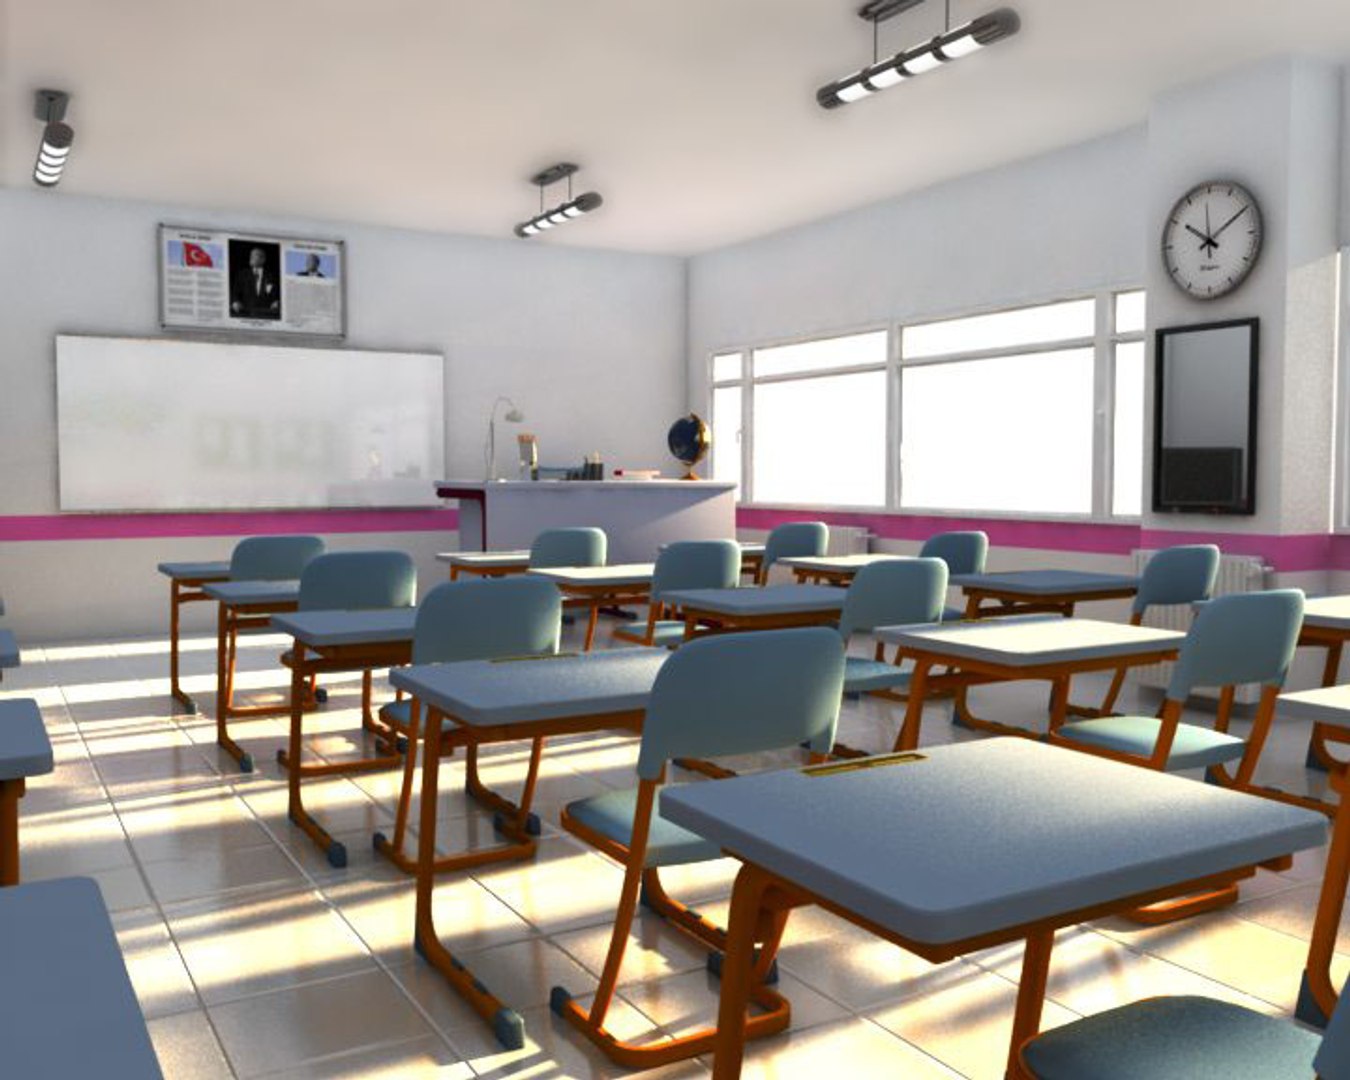 Classroom 3d. Classroom 3d model. Classroom Interior 3d models. Digital Education Classroom 3d model.